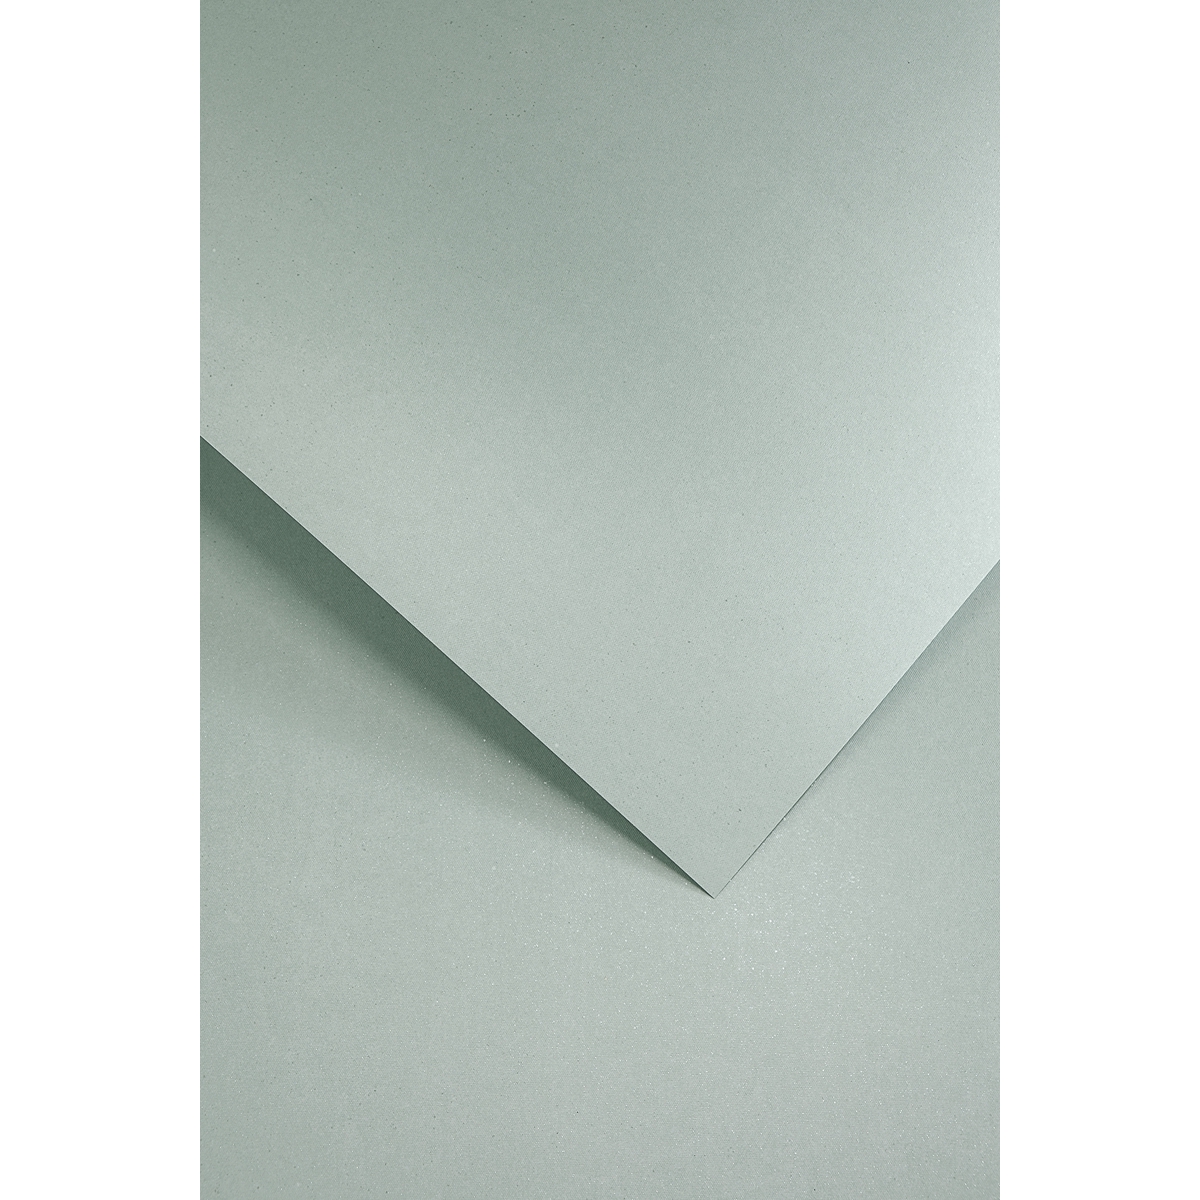 Ozdobný papír Mika, šedý, 240g, 20ks